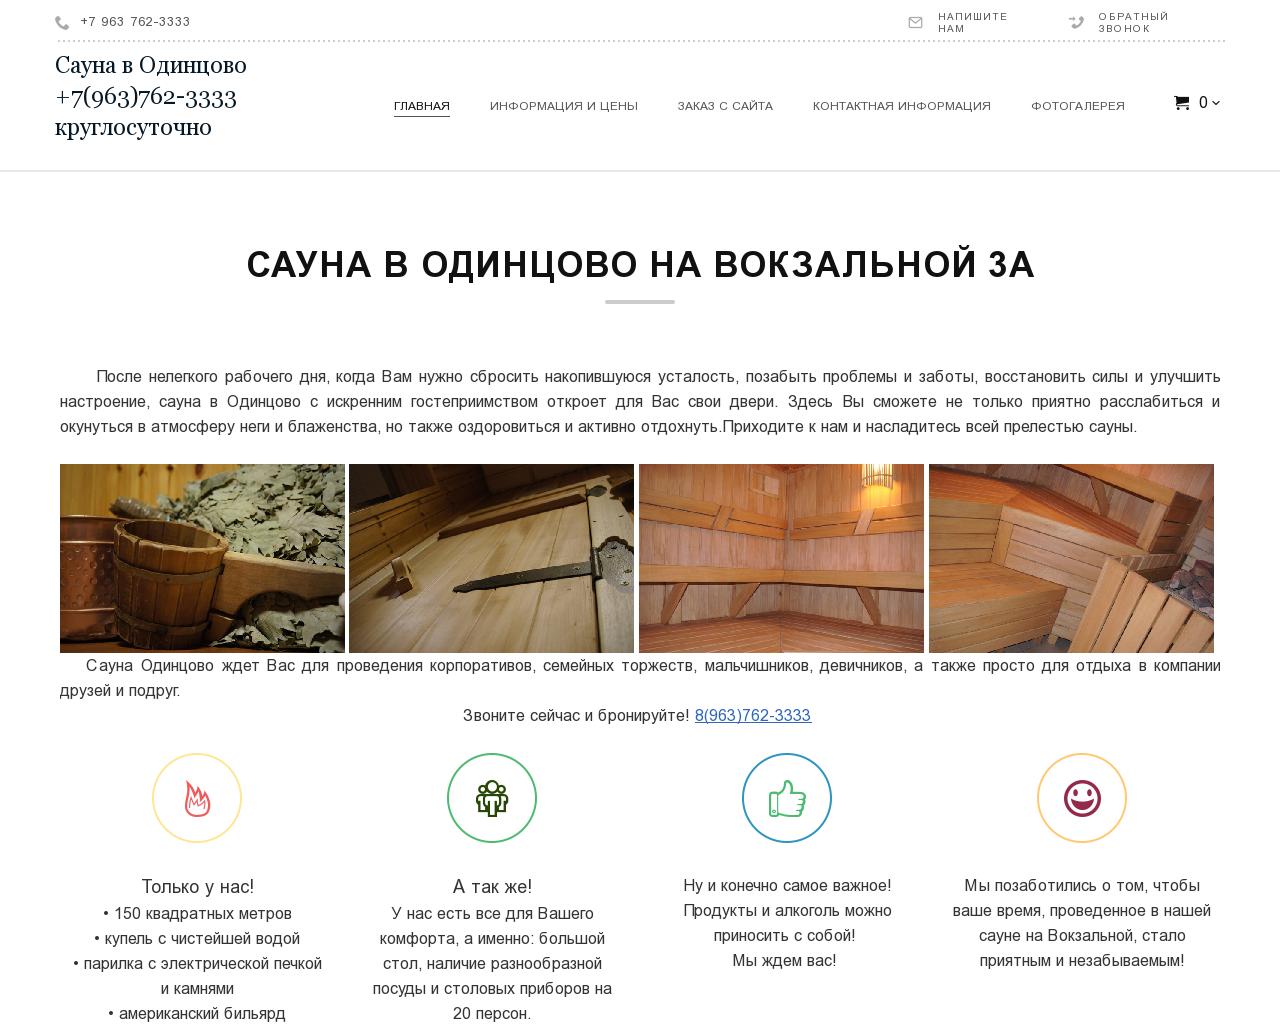 Изображение сайта sauna-odintsovo.ru в разрешении 1280x1024